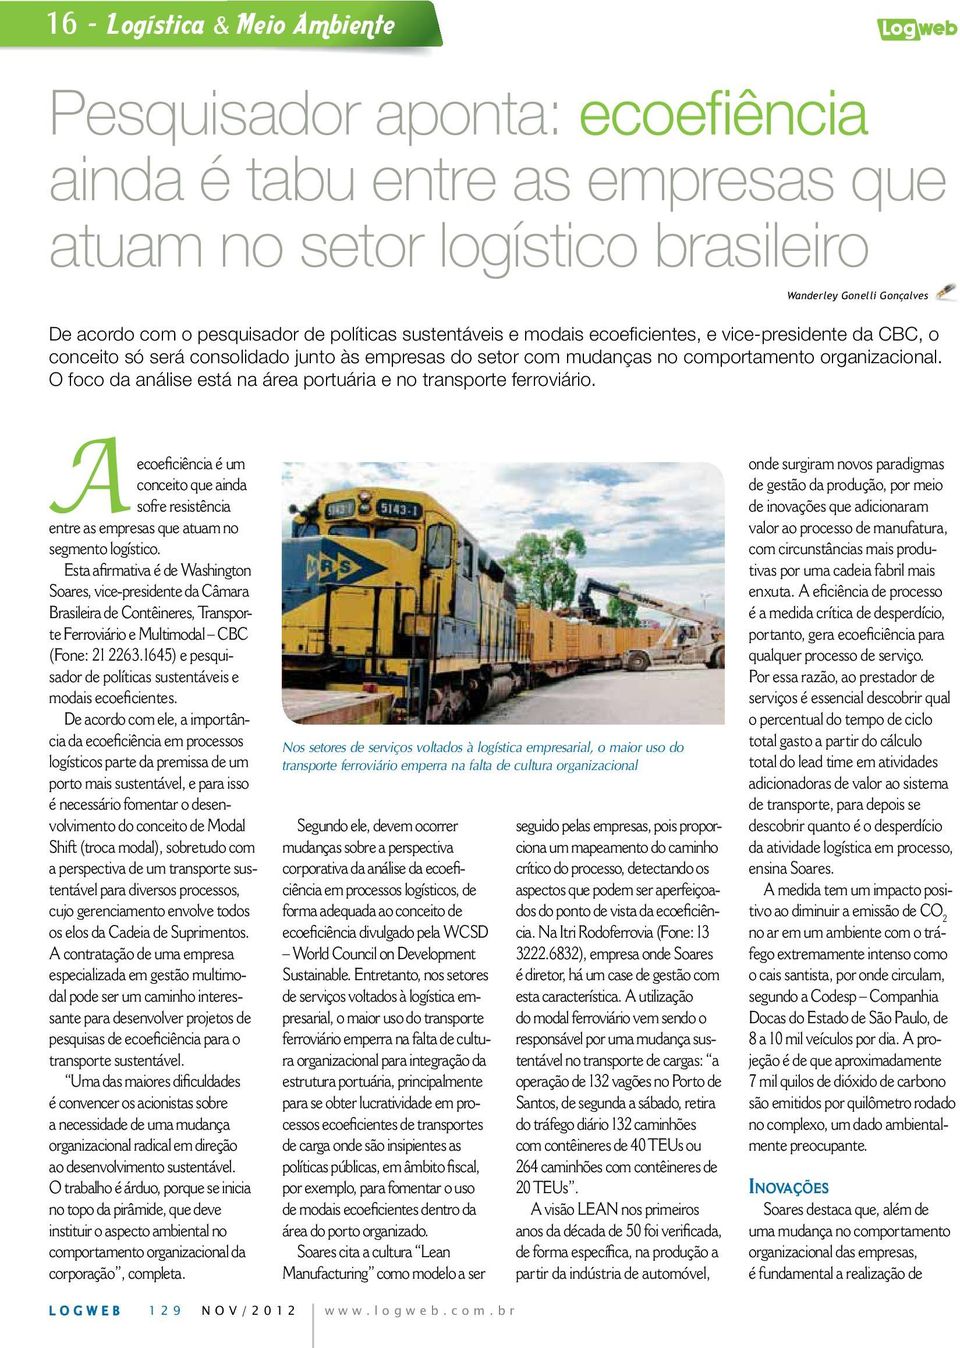 O foco da análise está na área portuária e no transporte ferroviário. A conceito que ainda sofre resistência entre as empresas que atuam no segmento logístico.